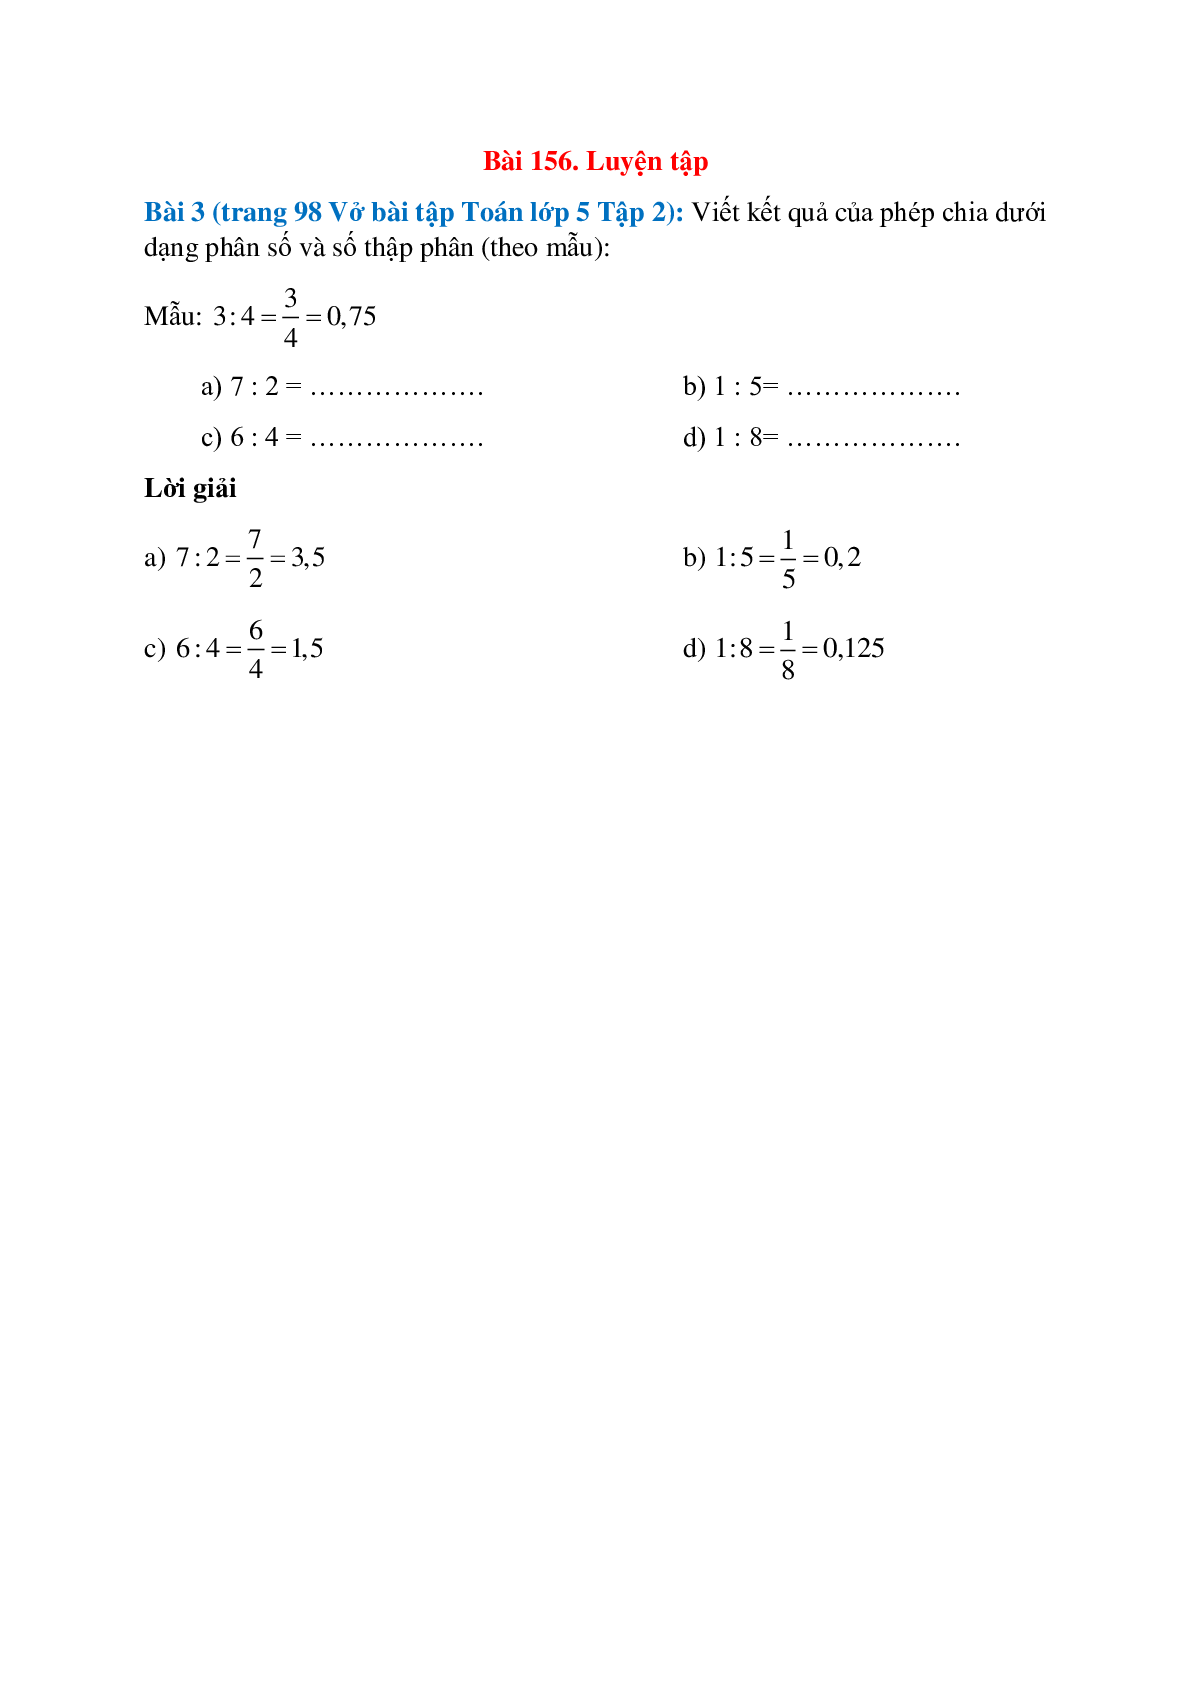 Viết kết quả của phép chia dưới dạng phân số và số thập phân (theo mẫu): 3:4=3/4=0,75 (trang 1)